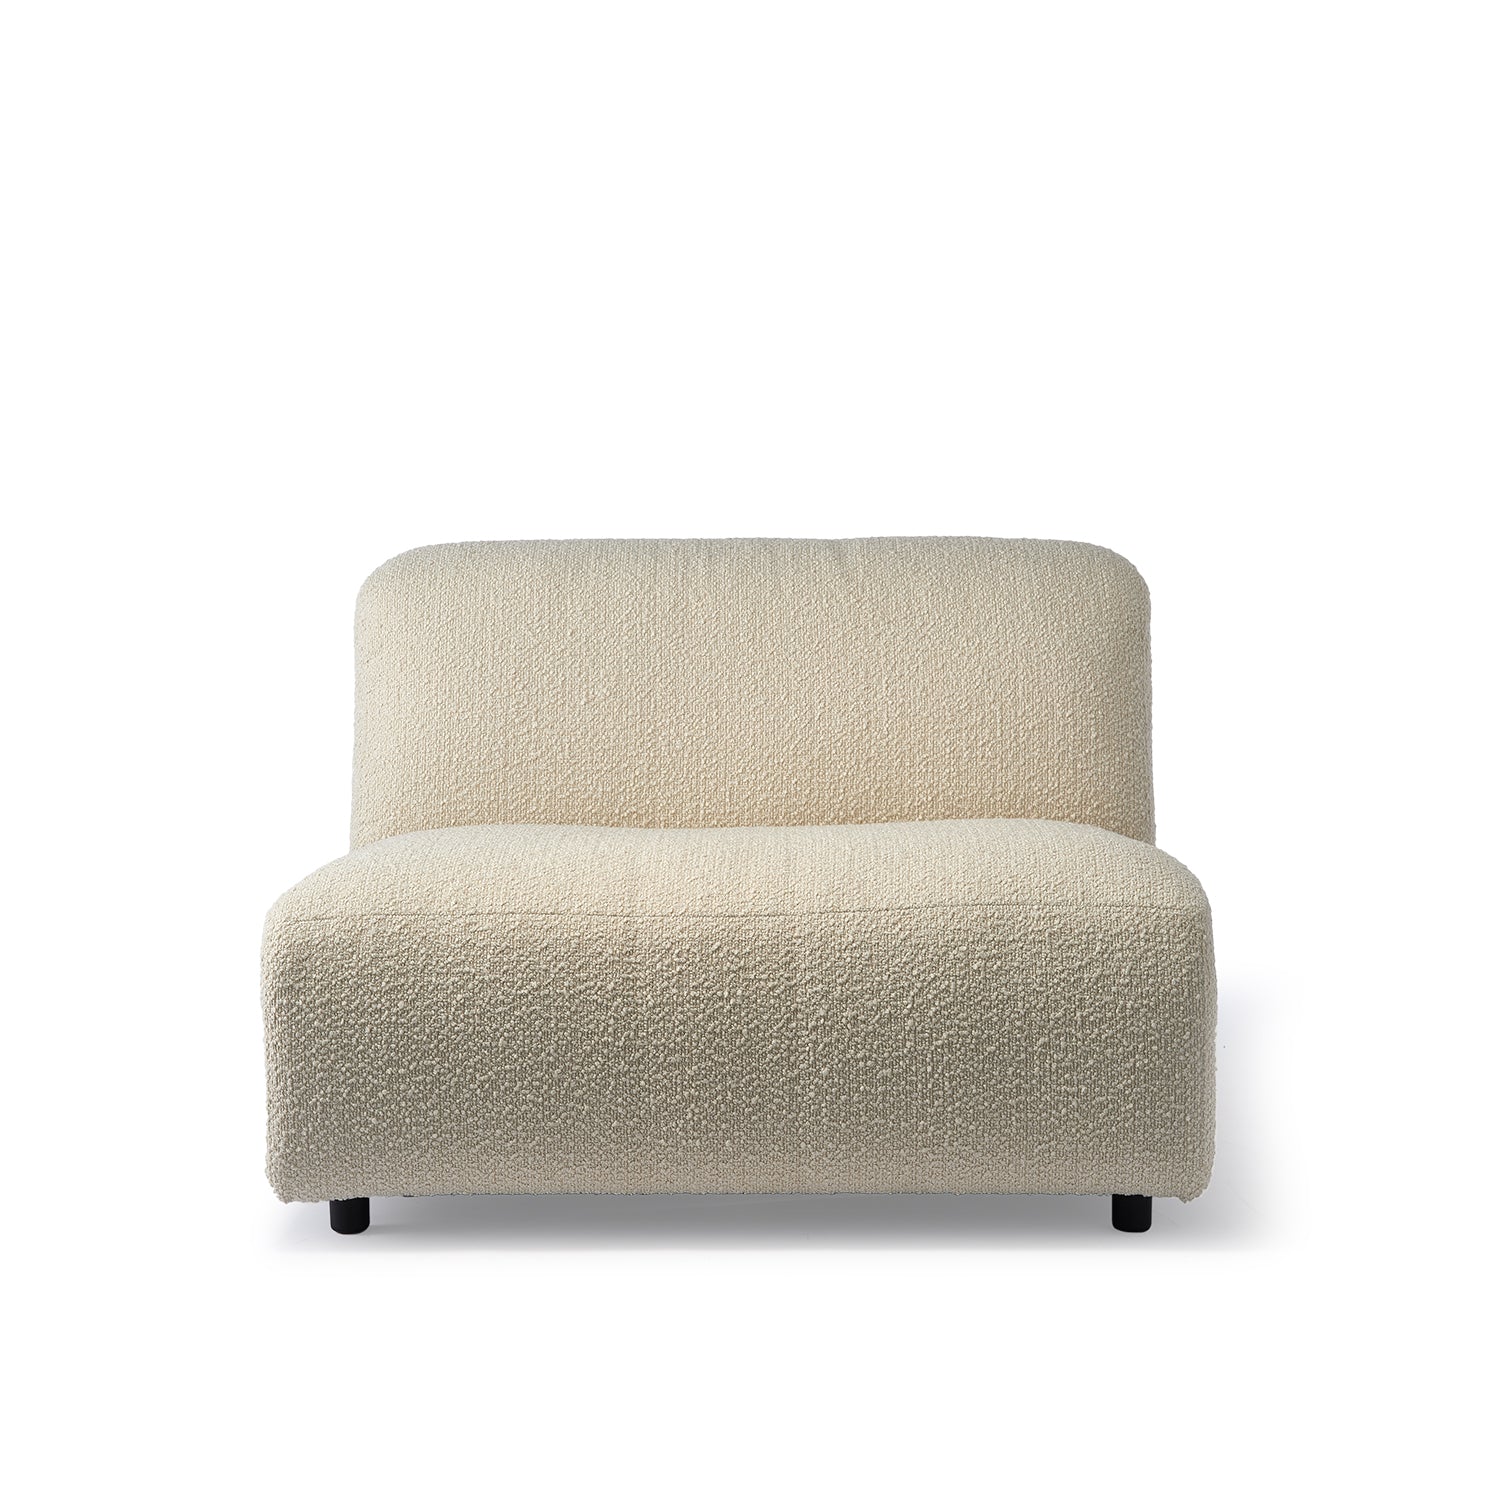 A-Round-U Modular Sofa - The Design Choice